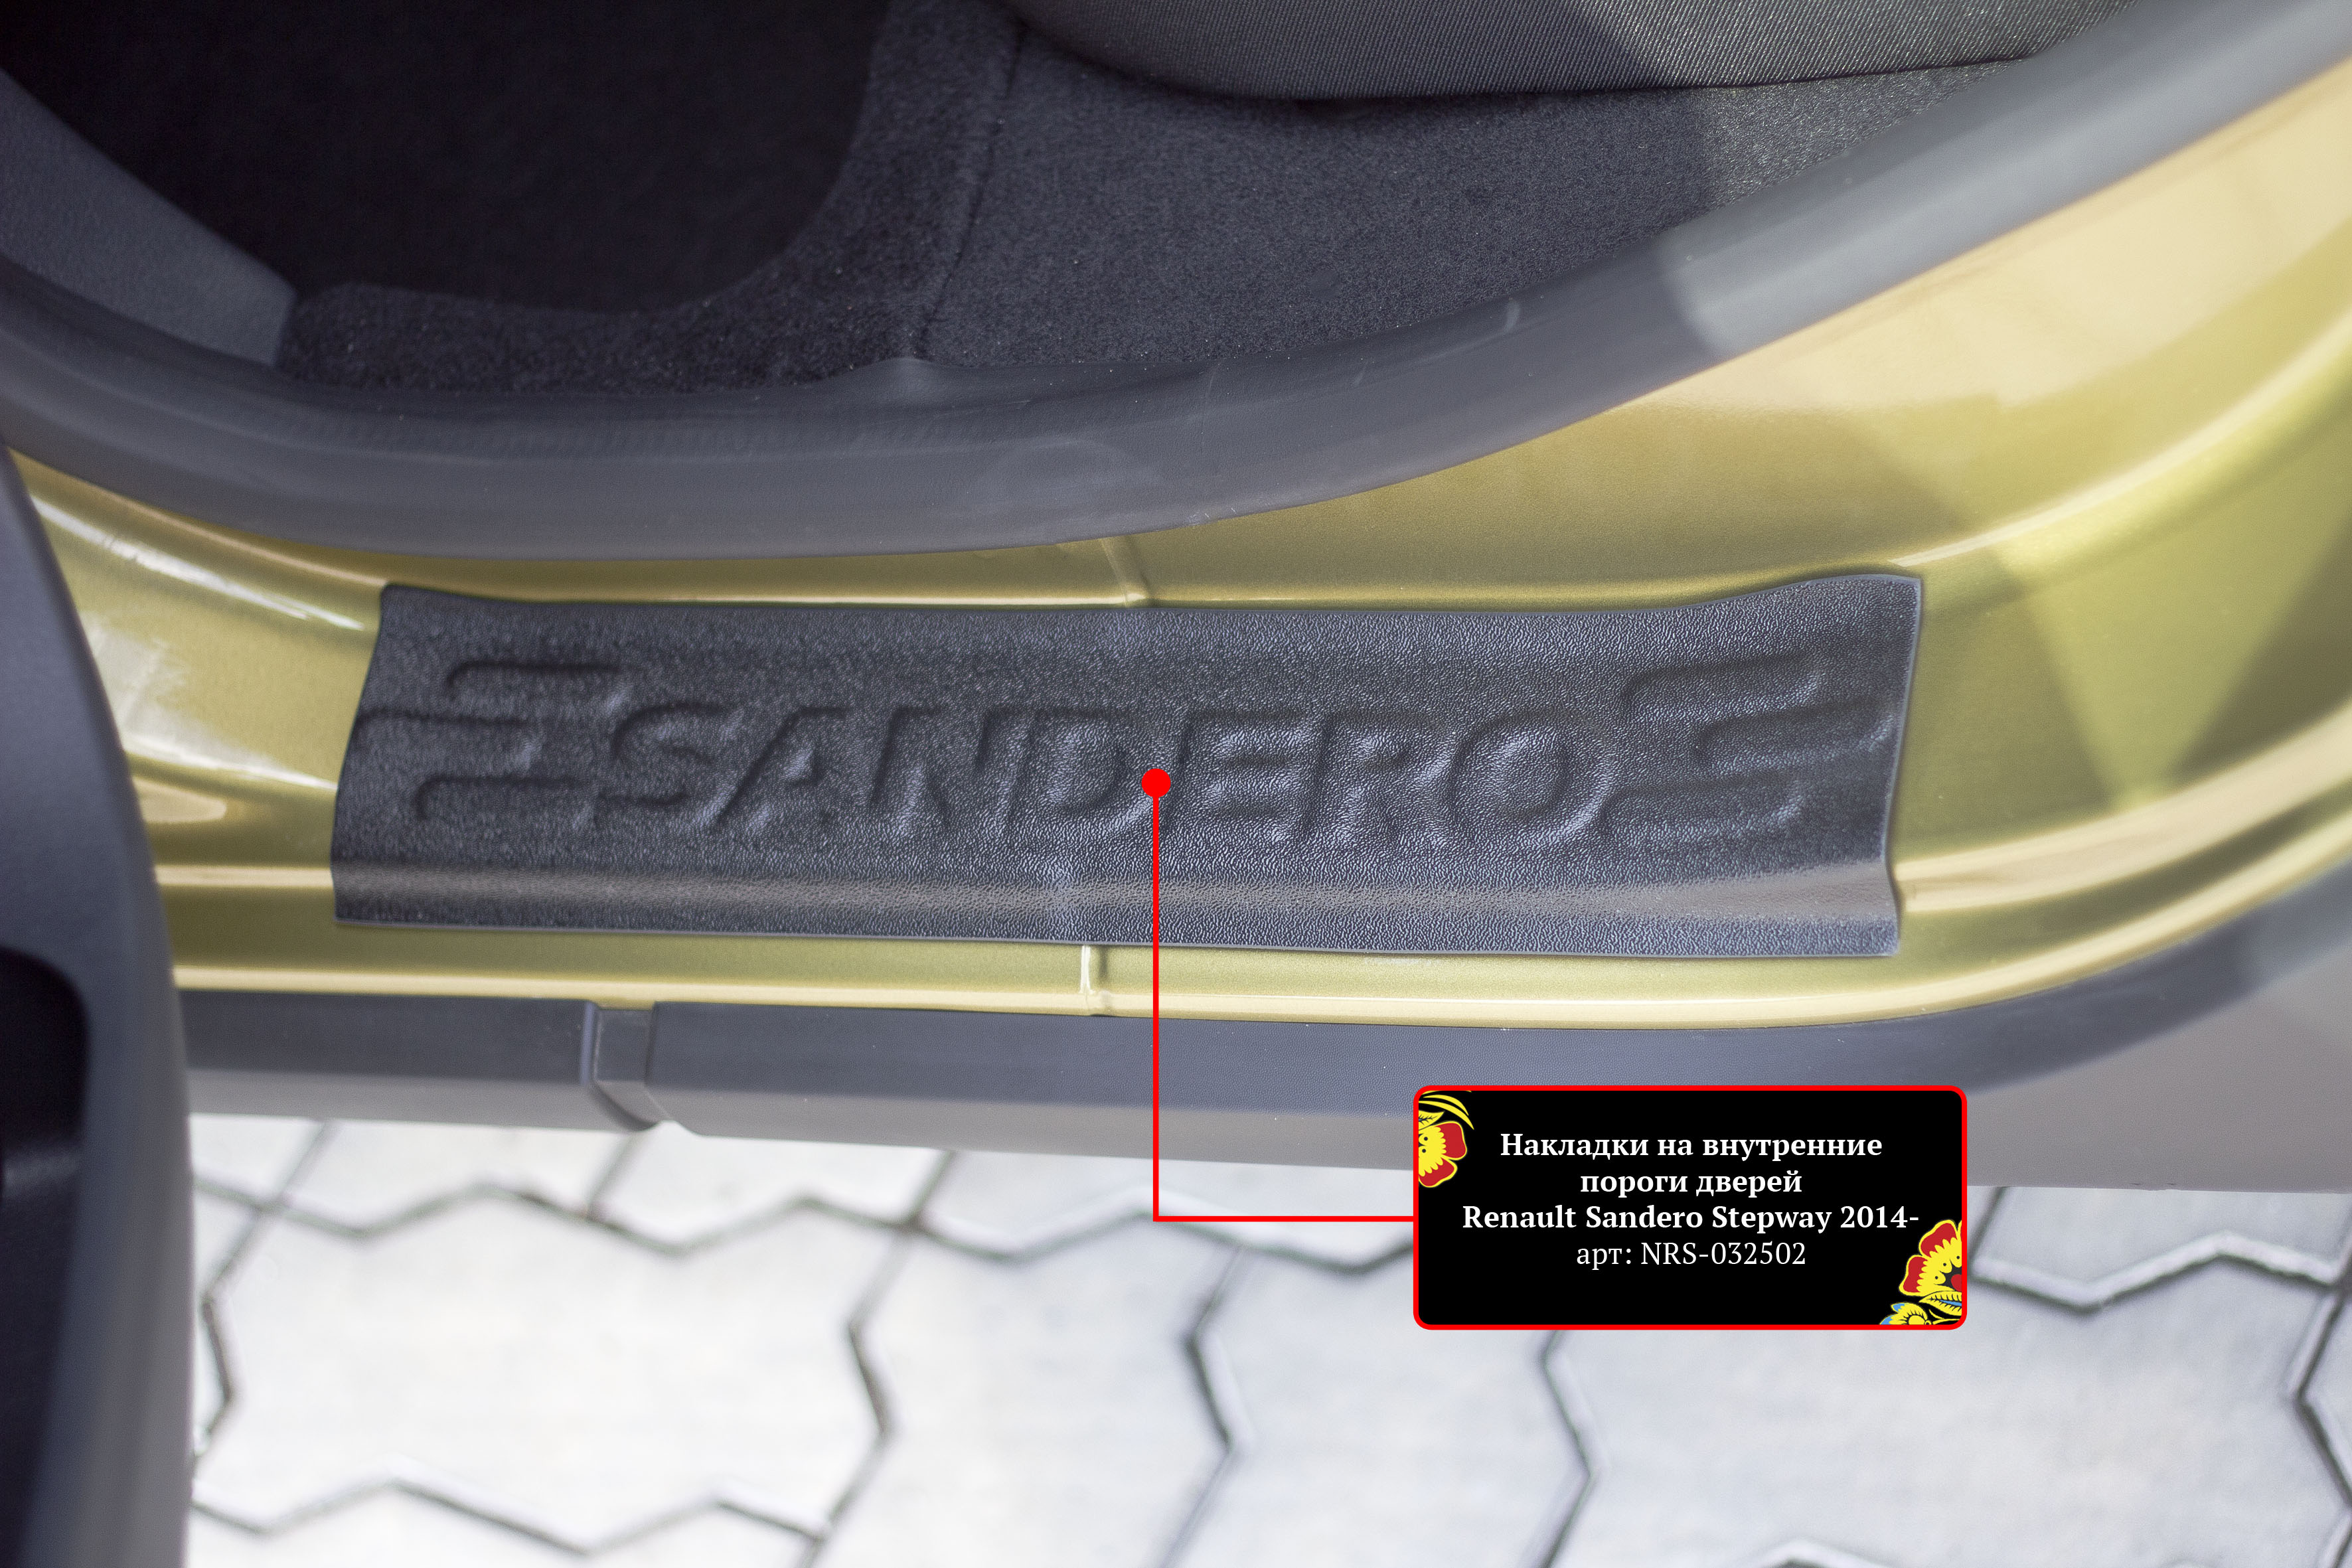 Накладки на внутренние пороги дверей (4шт) для Renault Sandero 2014-; Renault Sandero Stepway 2014-